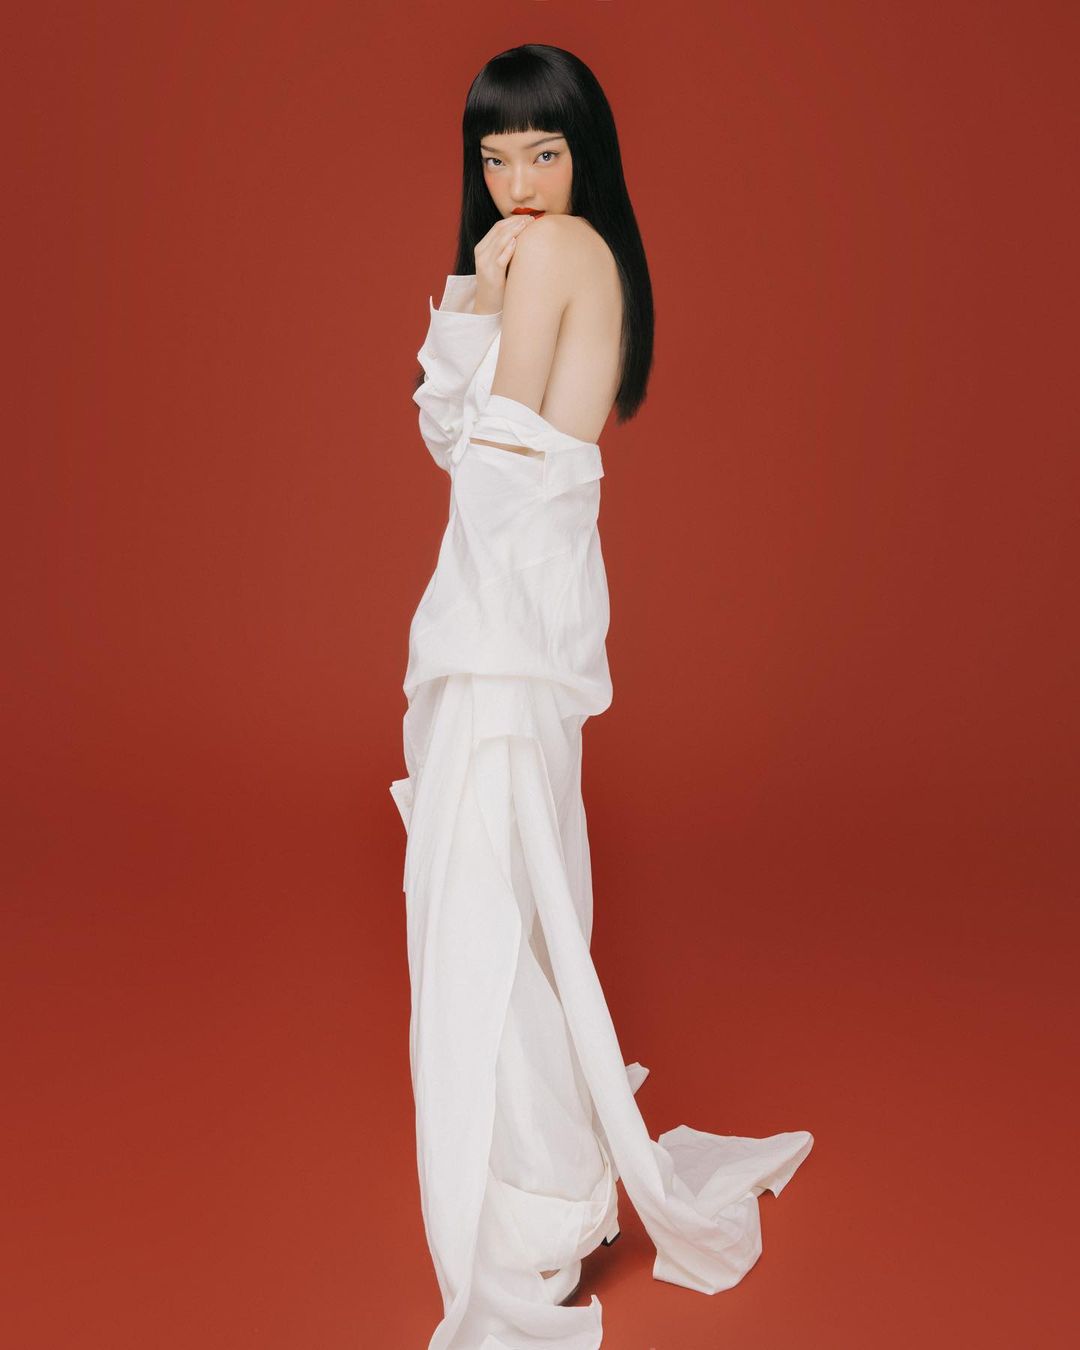 Nhân ngày 8/3, Châu Bùi thực hiện riêng một bộ ảnh. Cô chọn váy đến từ thương hiệu Gia Studios (Lâm Gia Khang) - nhà mốt nội địa có phong cách thiết kế thiên vế sự tối giản. Các trang phục của Gia Studios thường có gam màu trắng, kem hoặc đen.